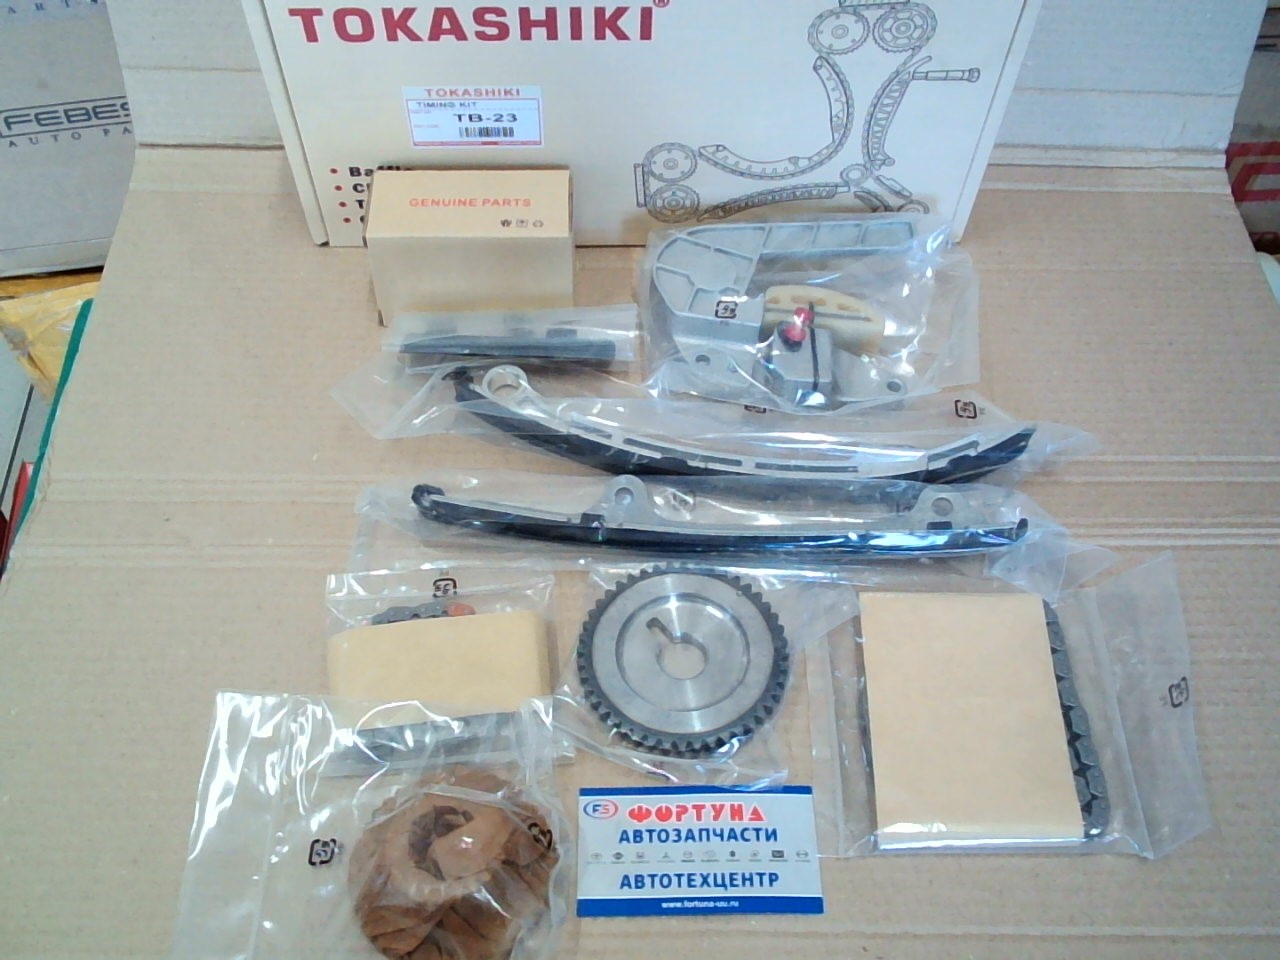 Комплект цепи ГРМ Nissan QR25DE (TB-23) TOKASHIKI /9pcs/ на  